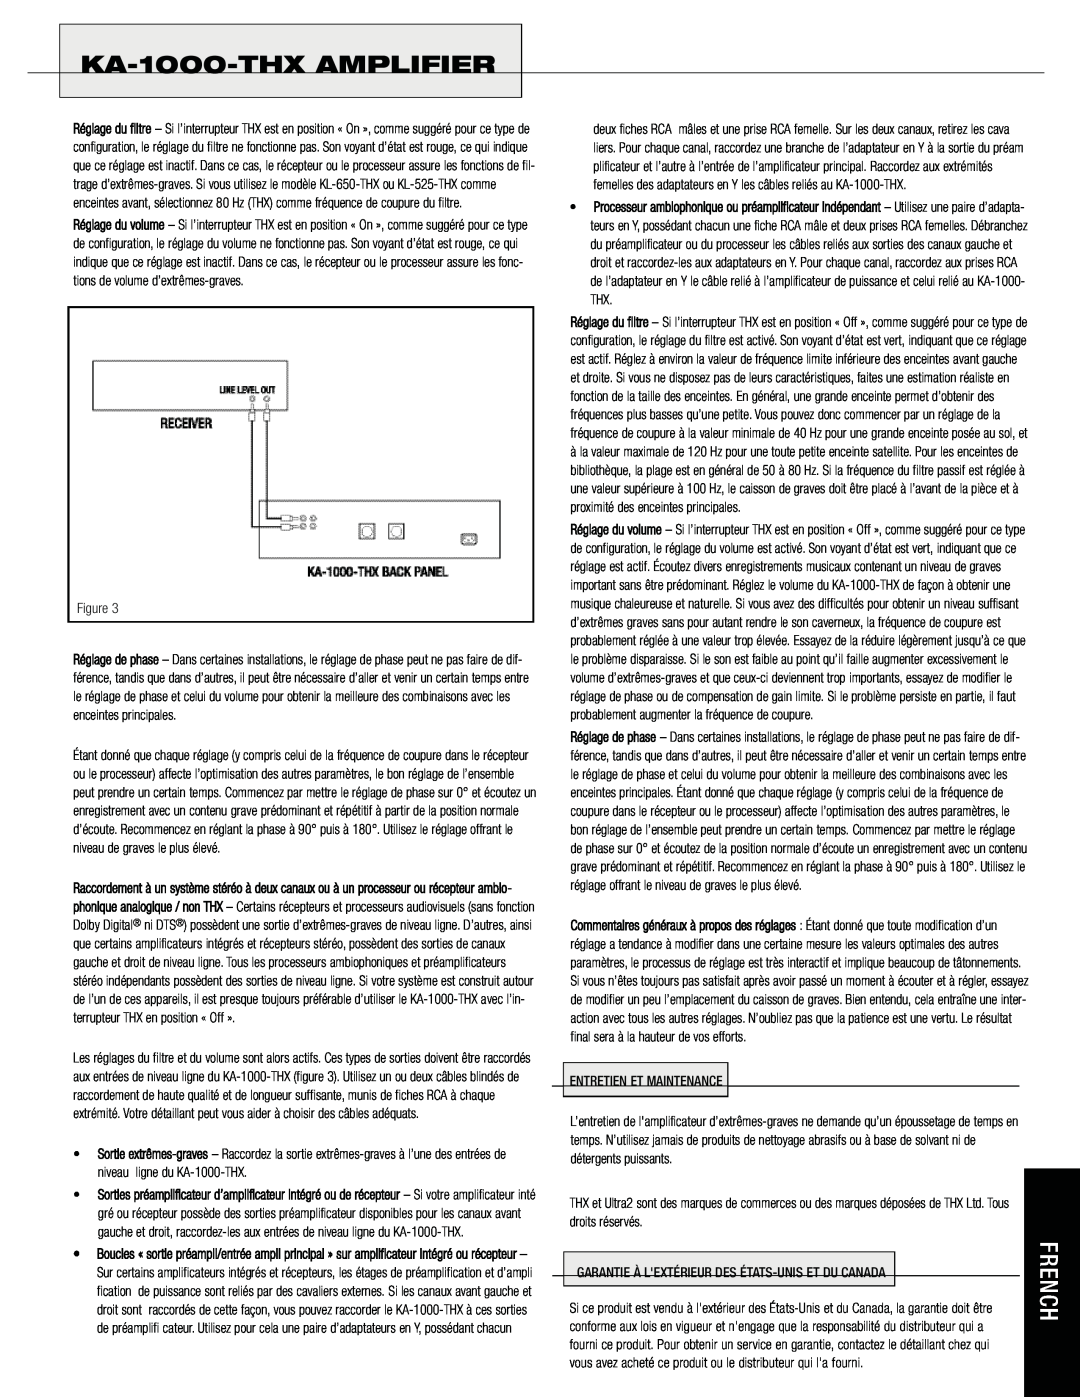 Klipsch KA-1000-THXAMPLIFIER, Figure, Entretien Et Maintenance, Garantie À Lextérieur Des États-Uniset Du Canada 